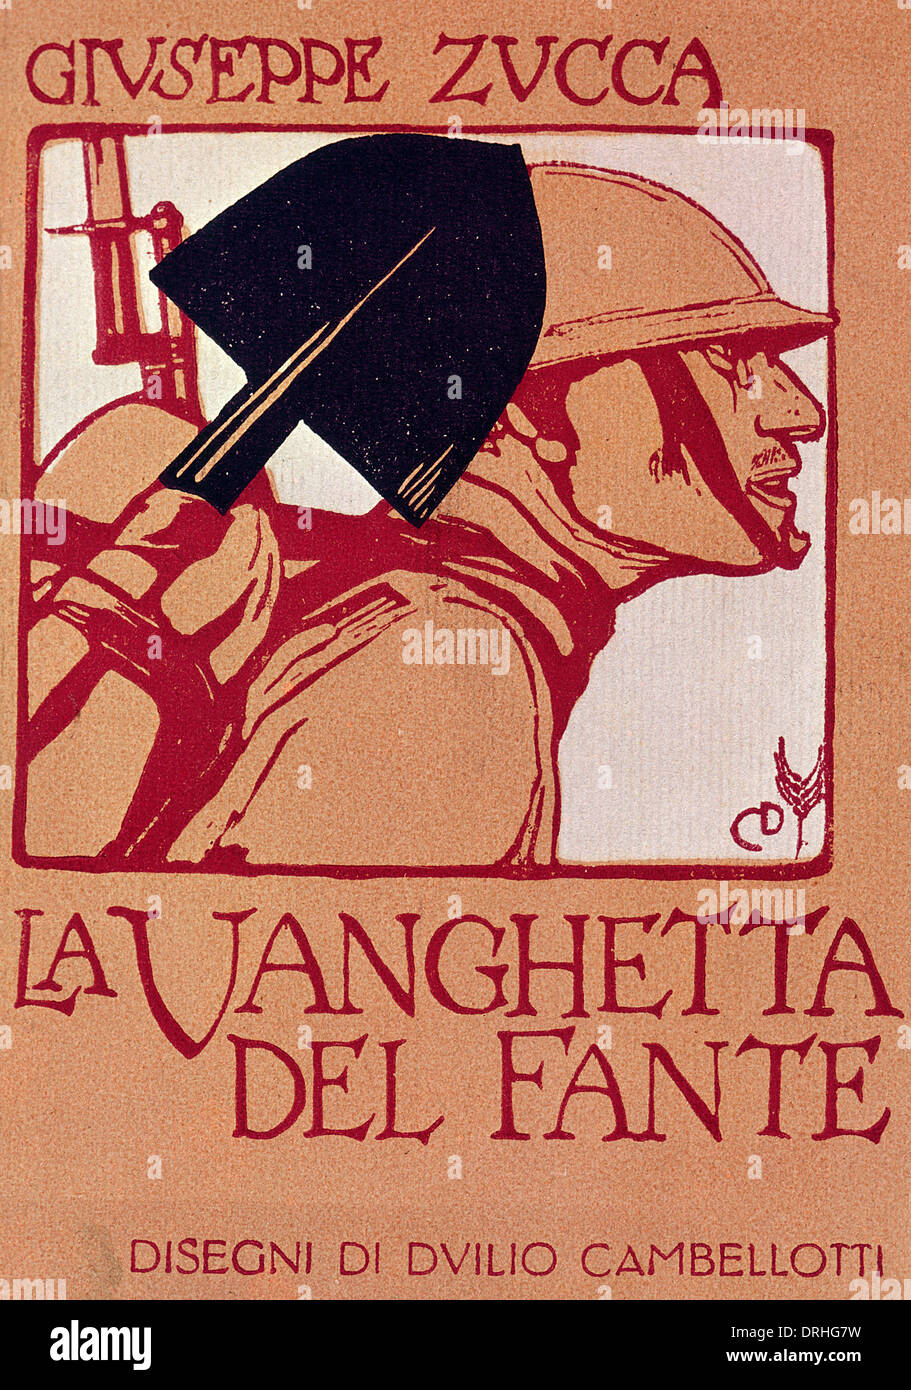 Couverture de livre design, la Vanghetta del Fante Banque D'Images